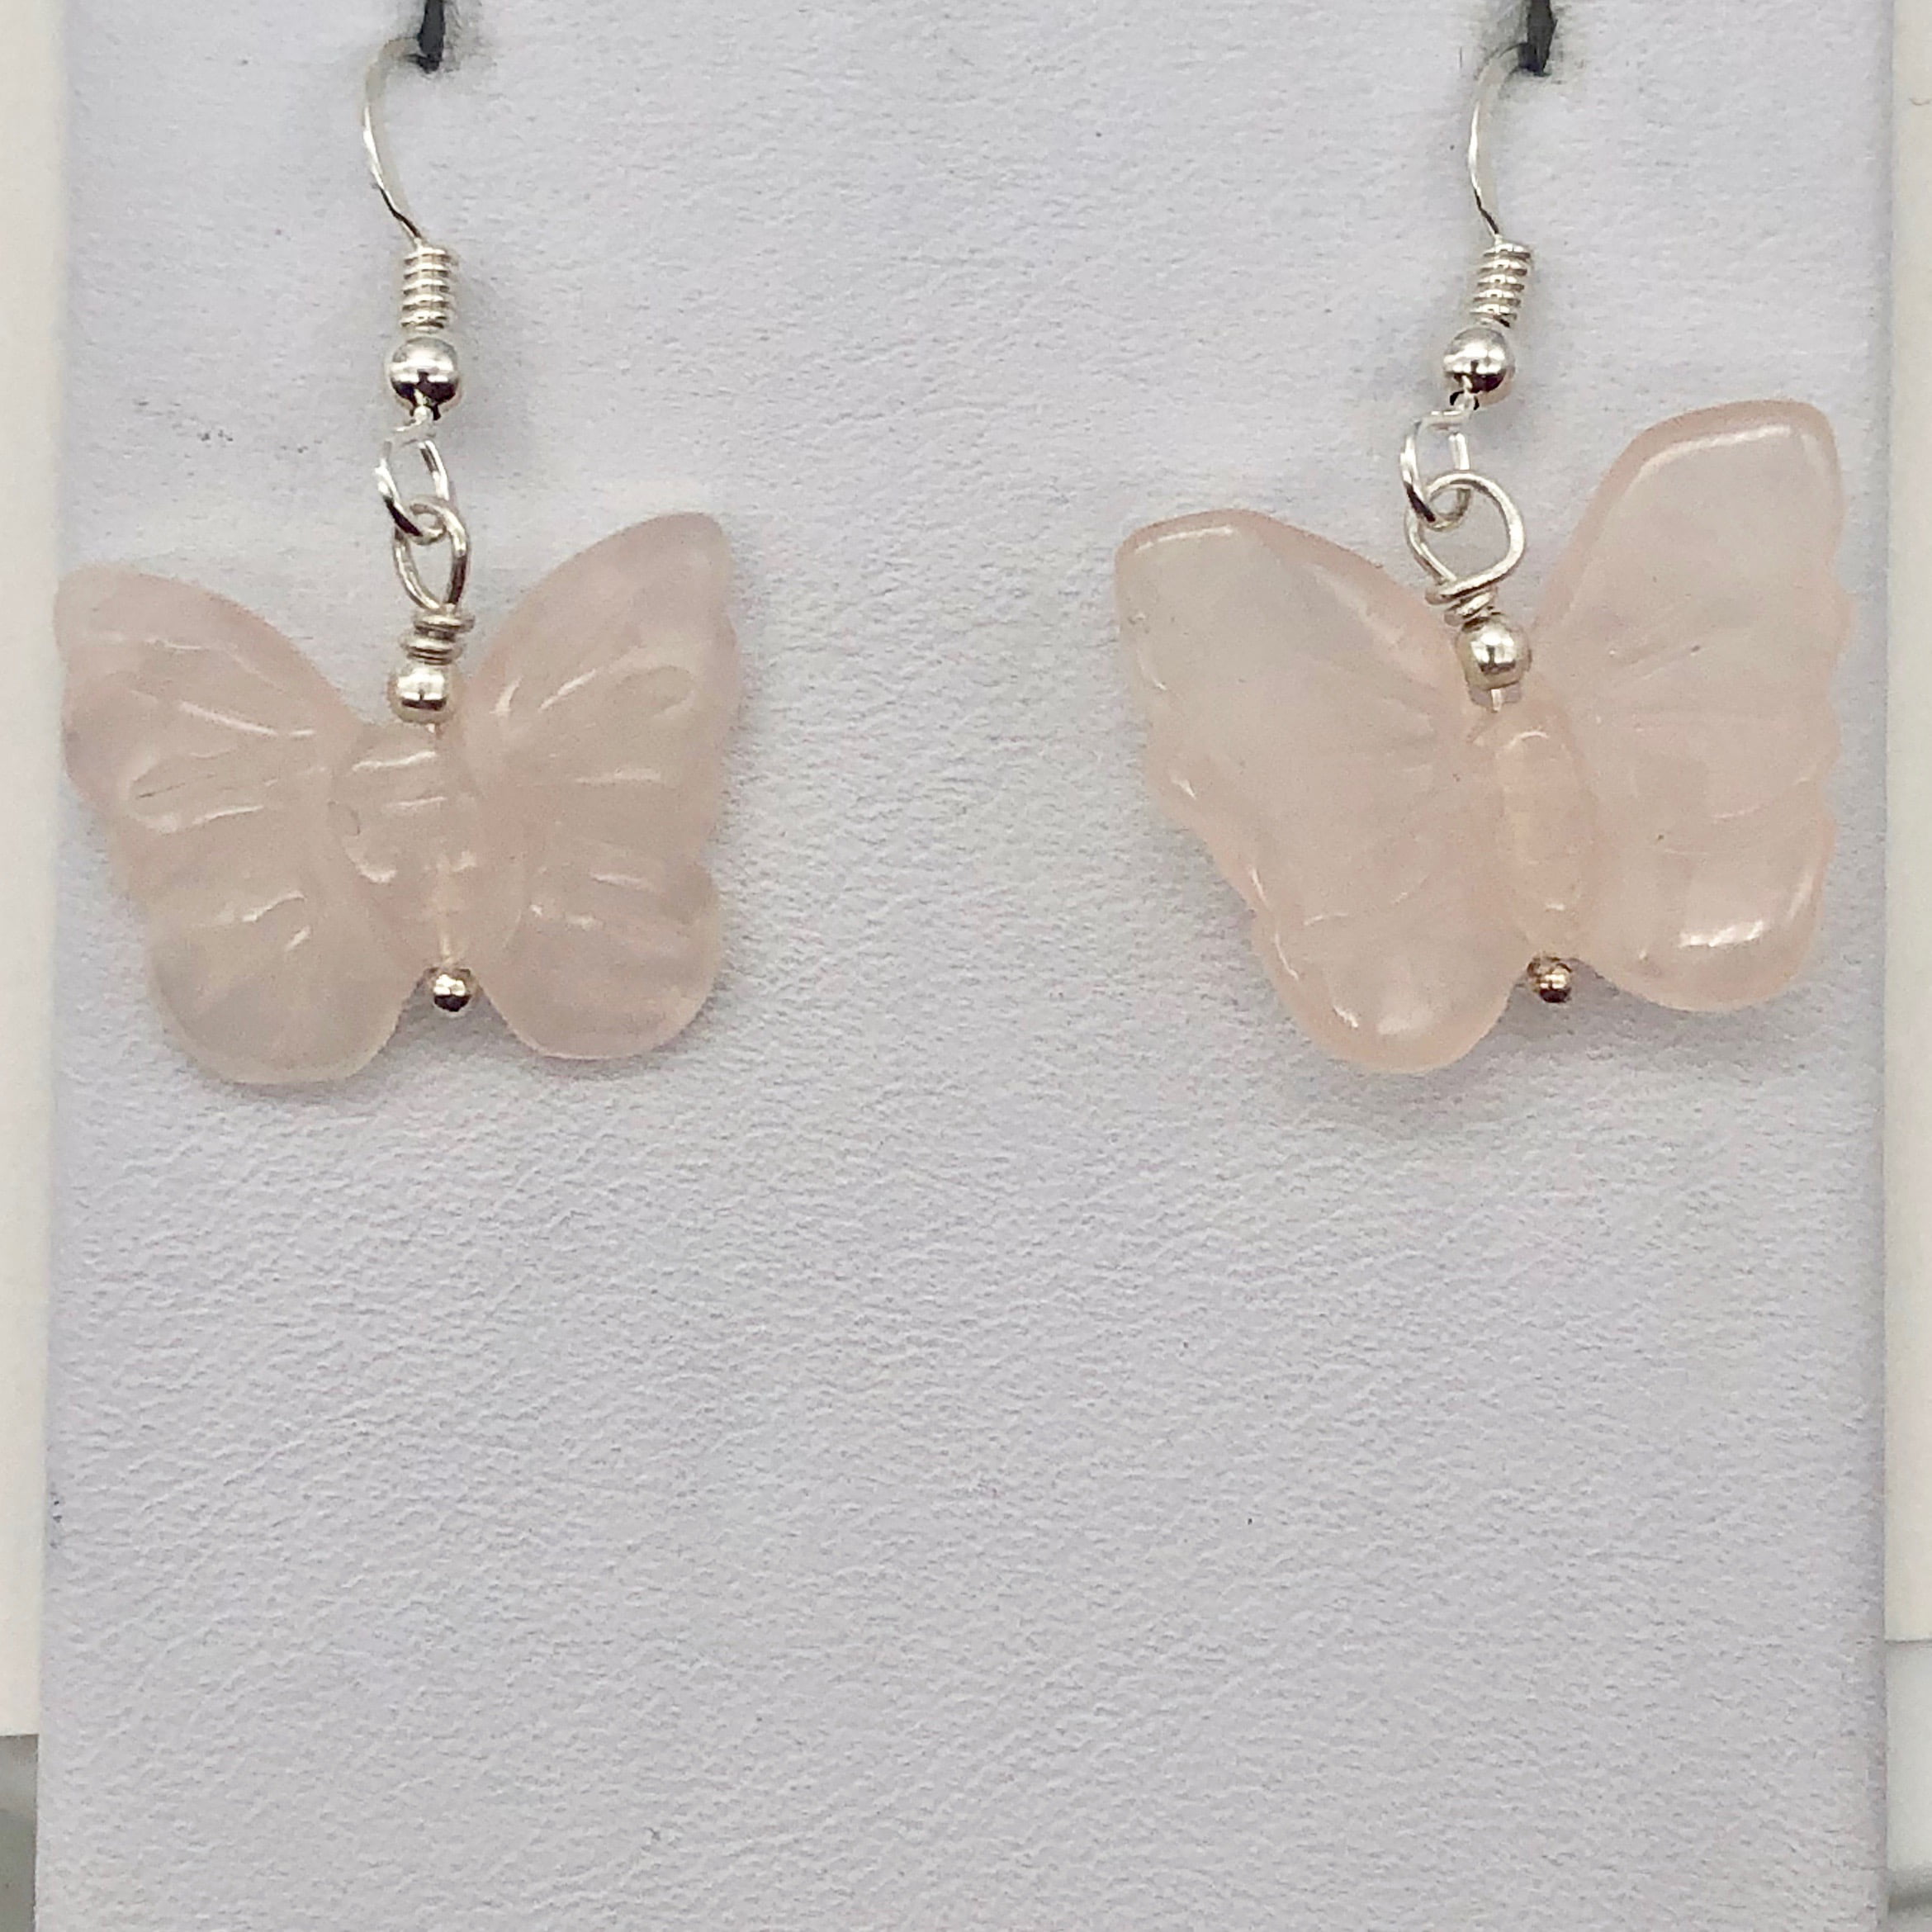 Flutter Pearl dangly hook earrings gold earrings butterfly earrings gold jewellery summer spring jewellery summer earrings Pearl earrings